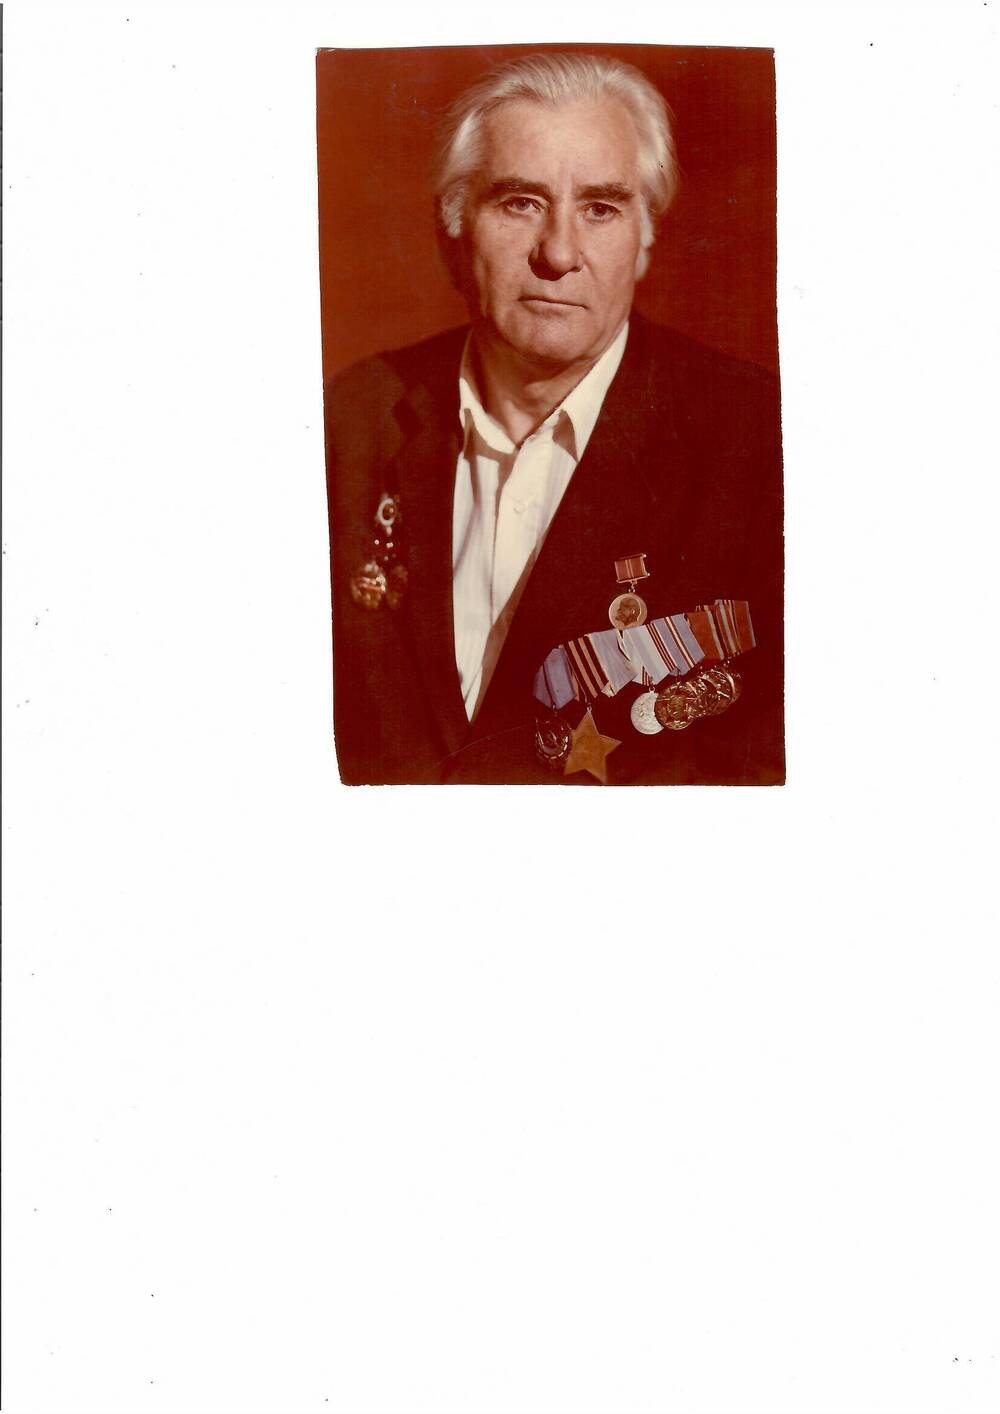 Фото цветное, на снимке изображен ветеран ВОВ Момот И.Я.